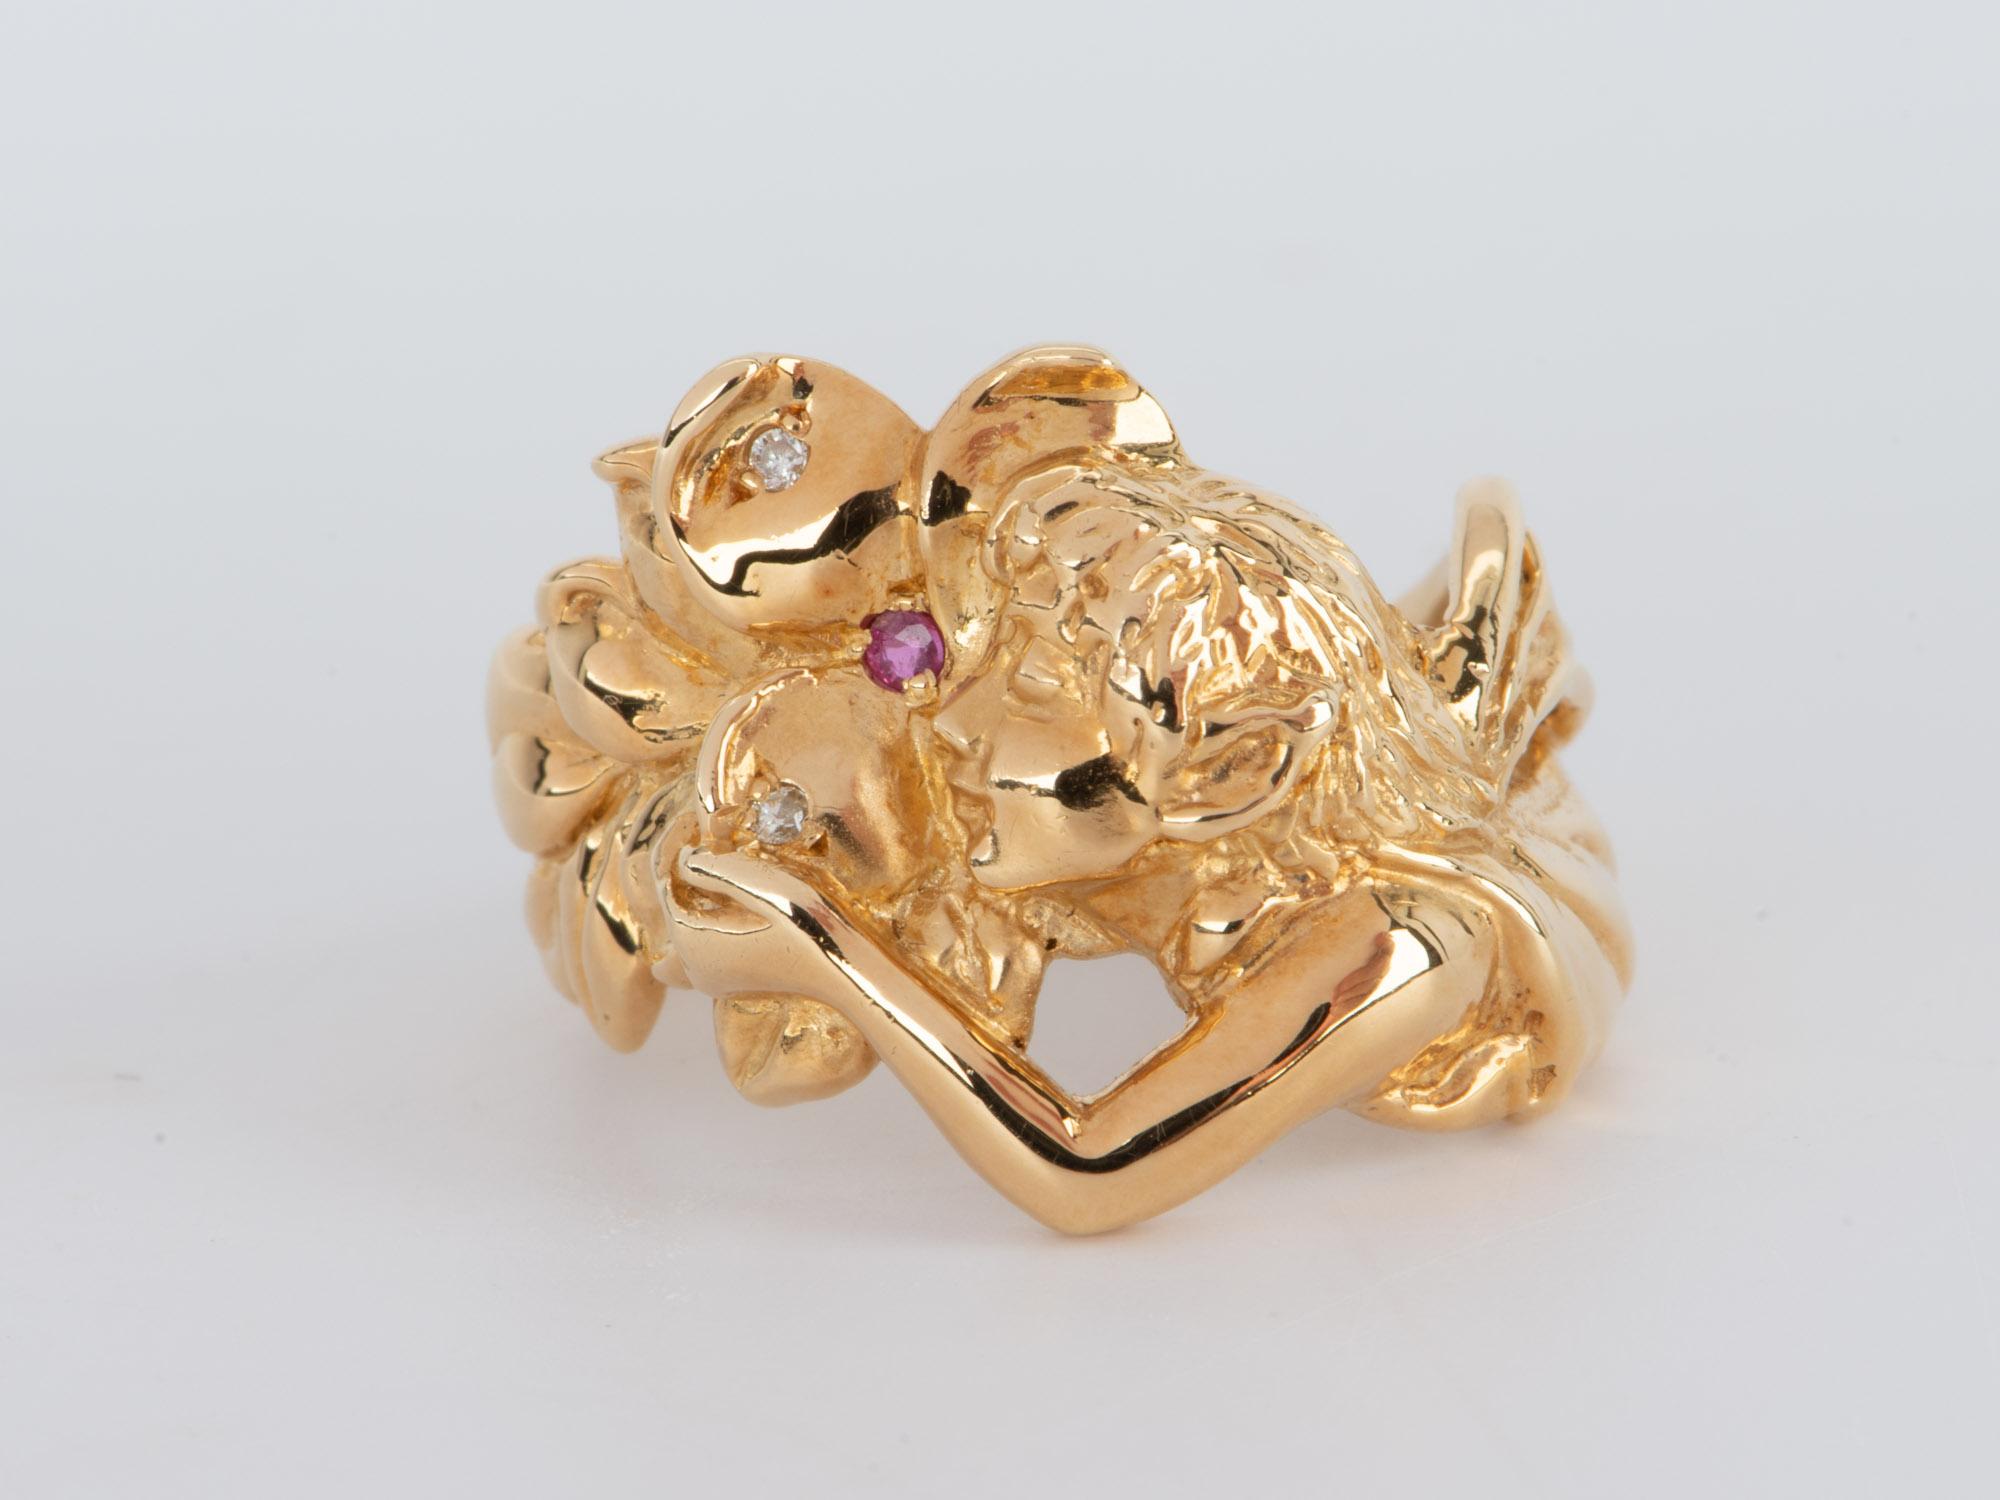   Dieser atemberaubende Ring aus 18 Karat Gold ist die perfekte Wahl für jeden Schmuckliebhaber! Dieser elegante Ring mit seinem vom Jugendstil inspirierten Design besticht durch eine wunderschöne, im Haar fließende Fee, gesprenkelte Diamanten und